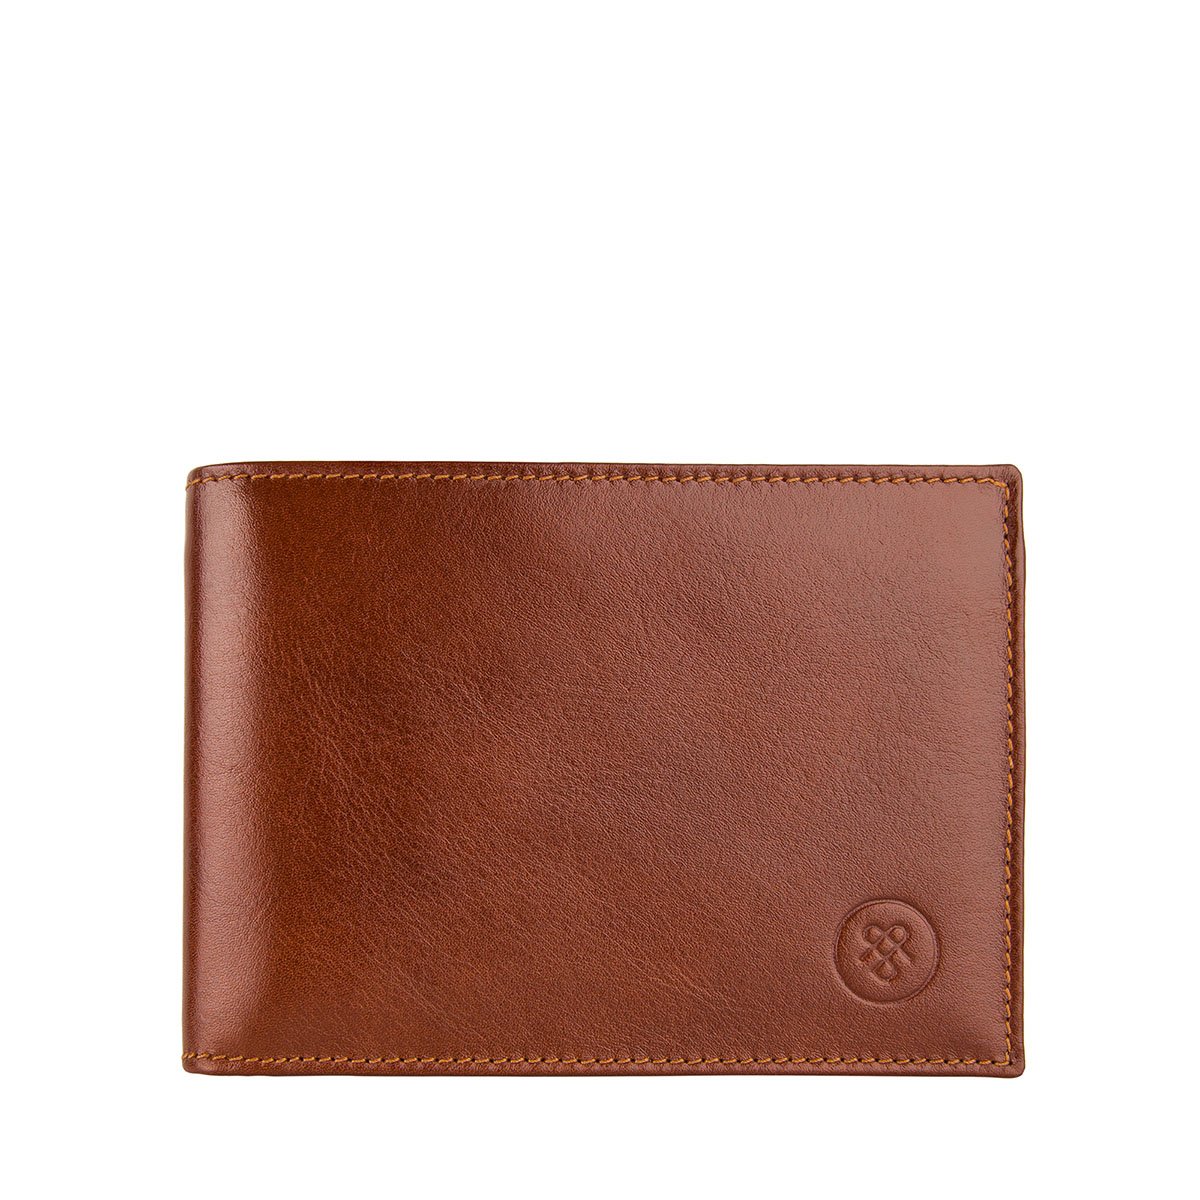 Men's Luxury Leather Wallets, 25 years warranty